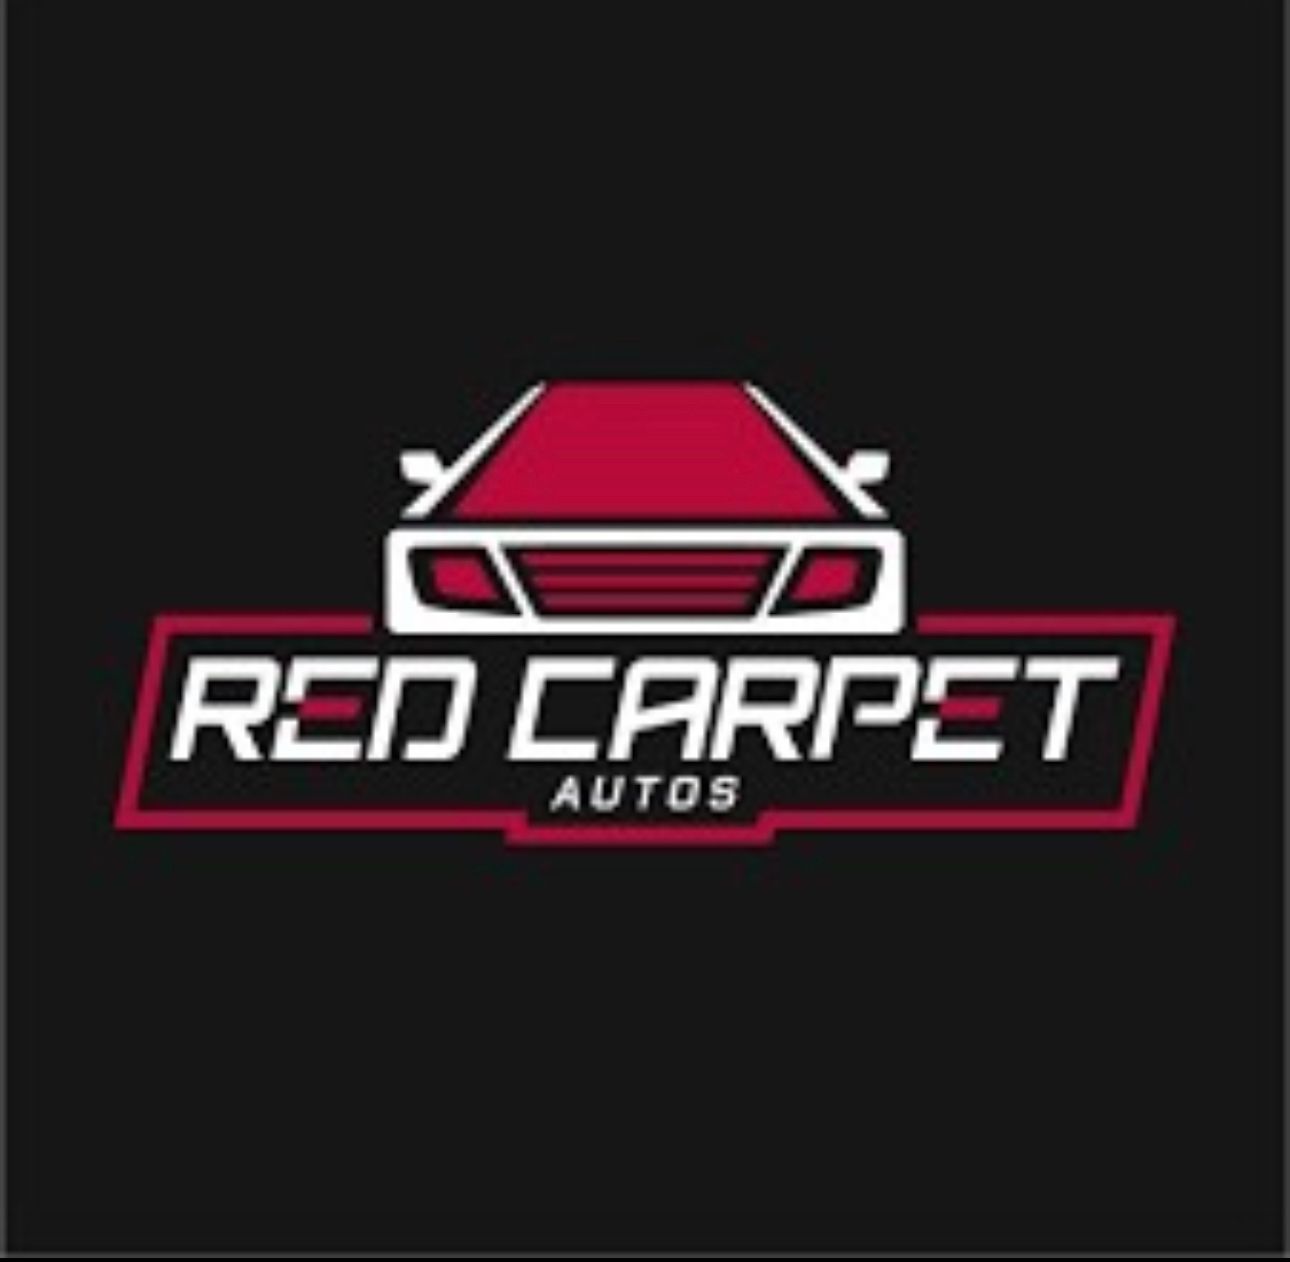 RED CARPET QUALITY AUTO